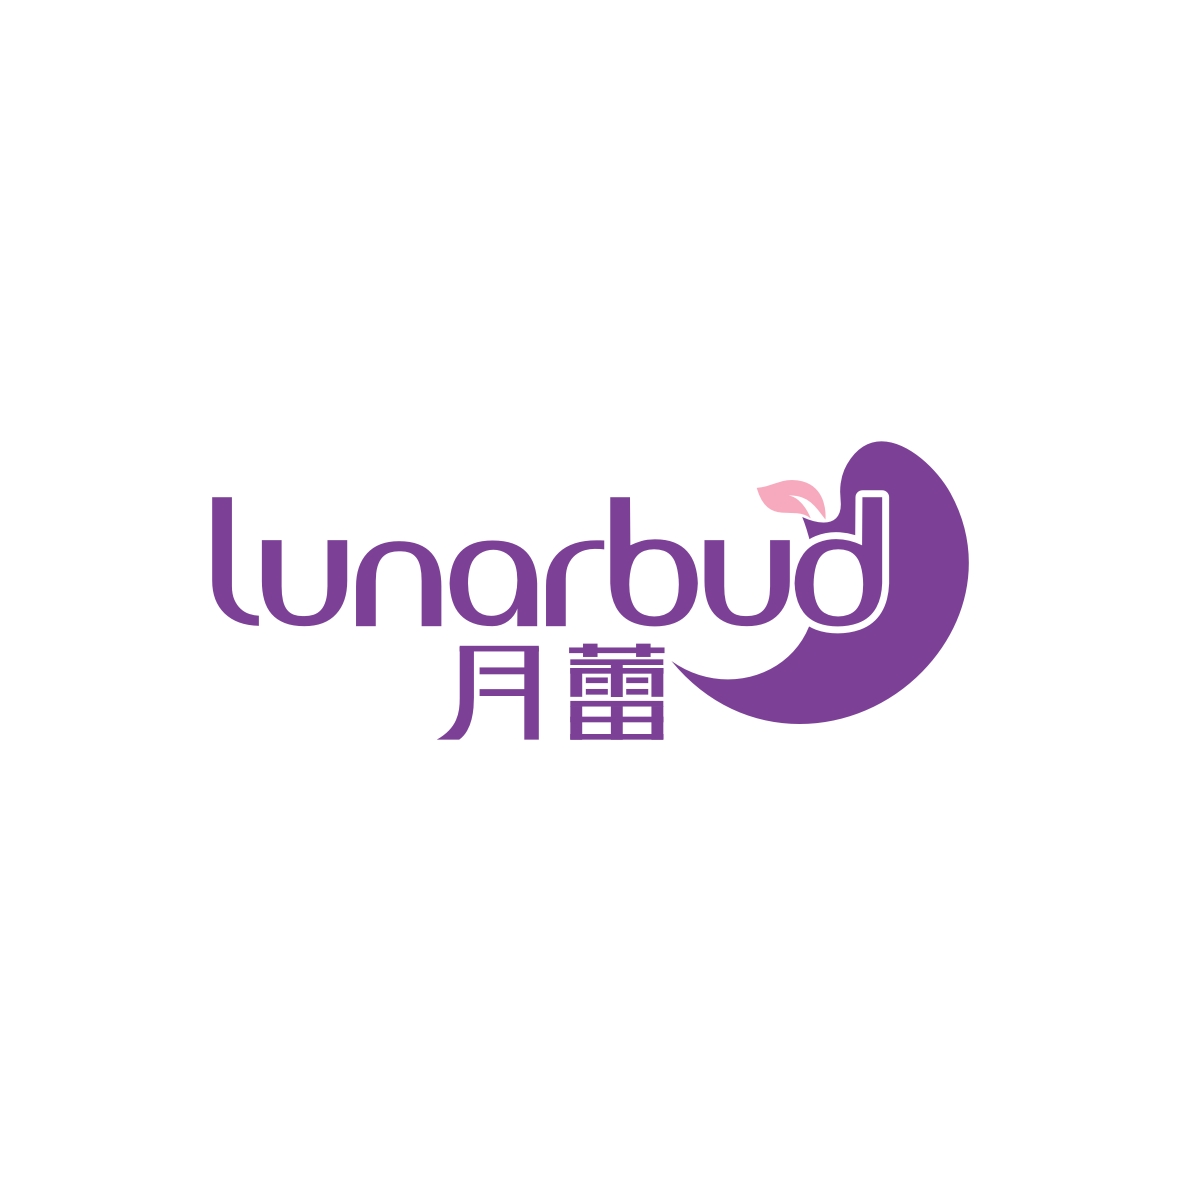 陶跃辉商标月蕾 LUNARBUD（44类）商标转让流程及费用